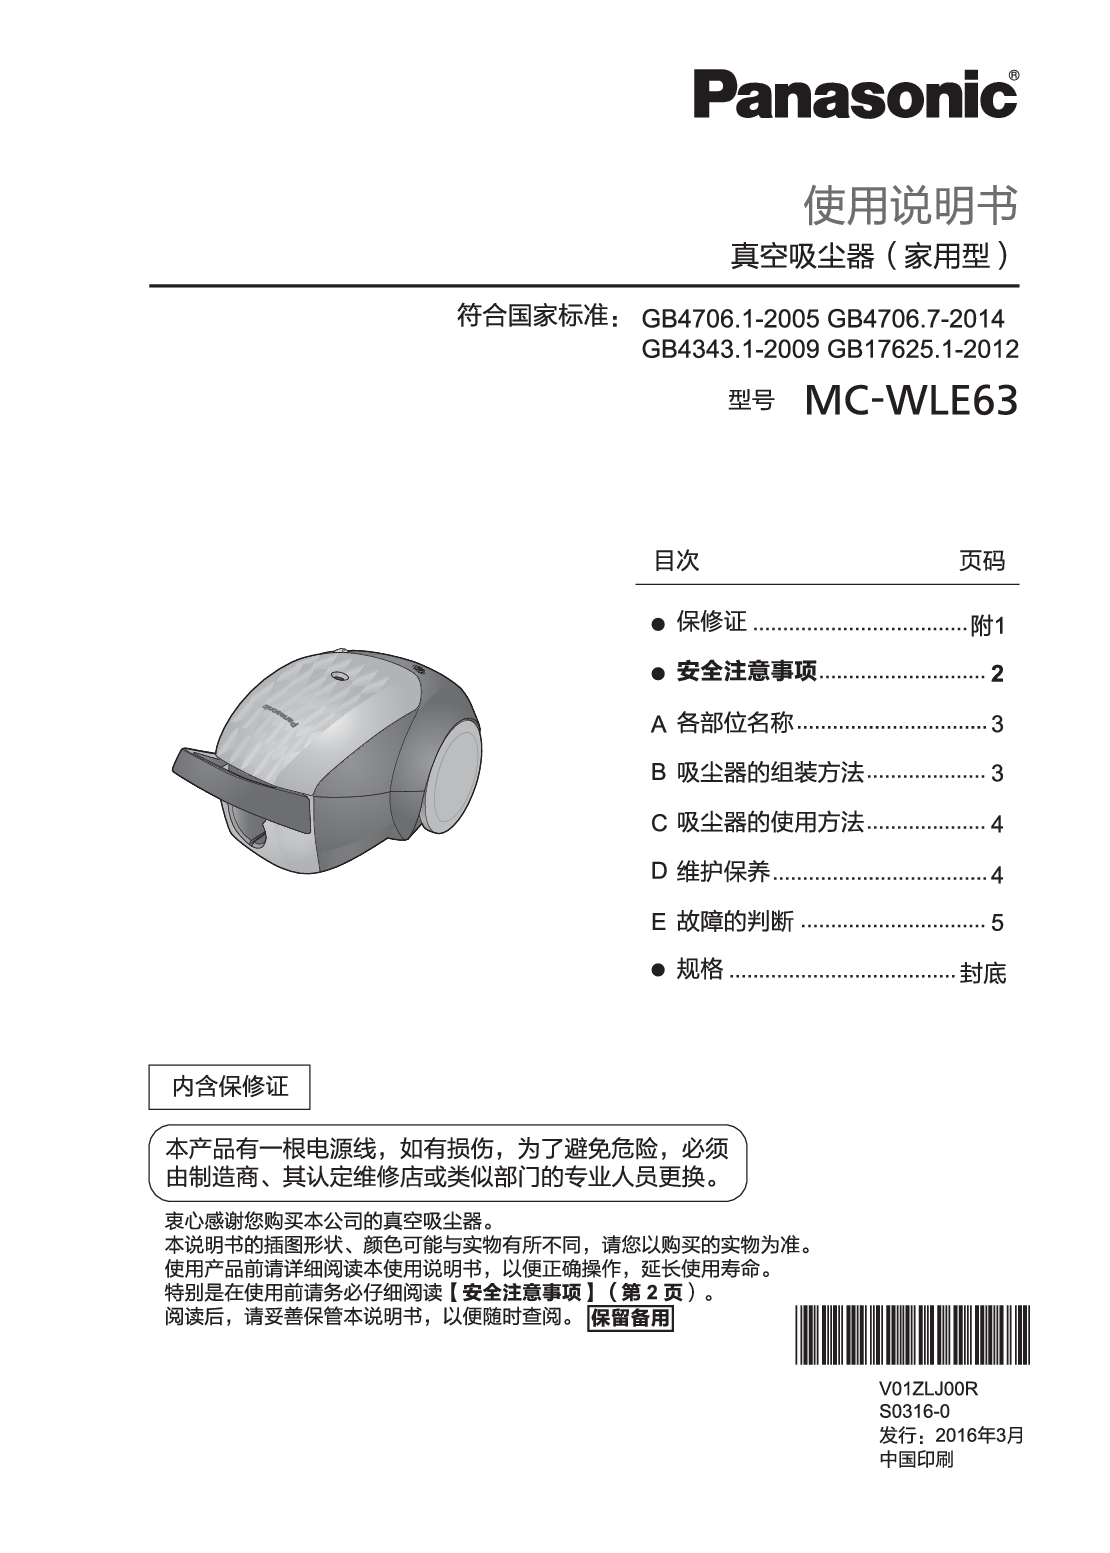 松下 Panasonic MC-WLE63 使用说明书 封面